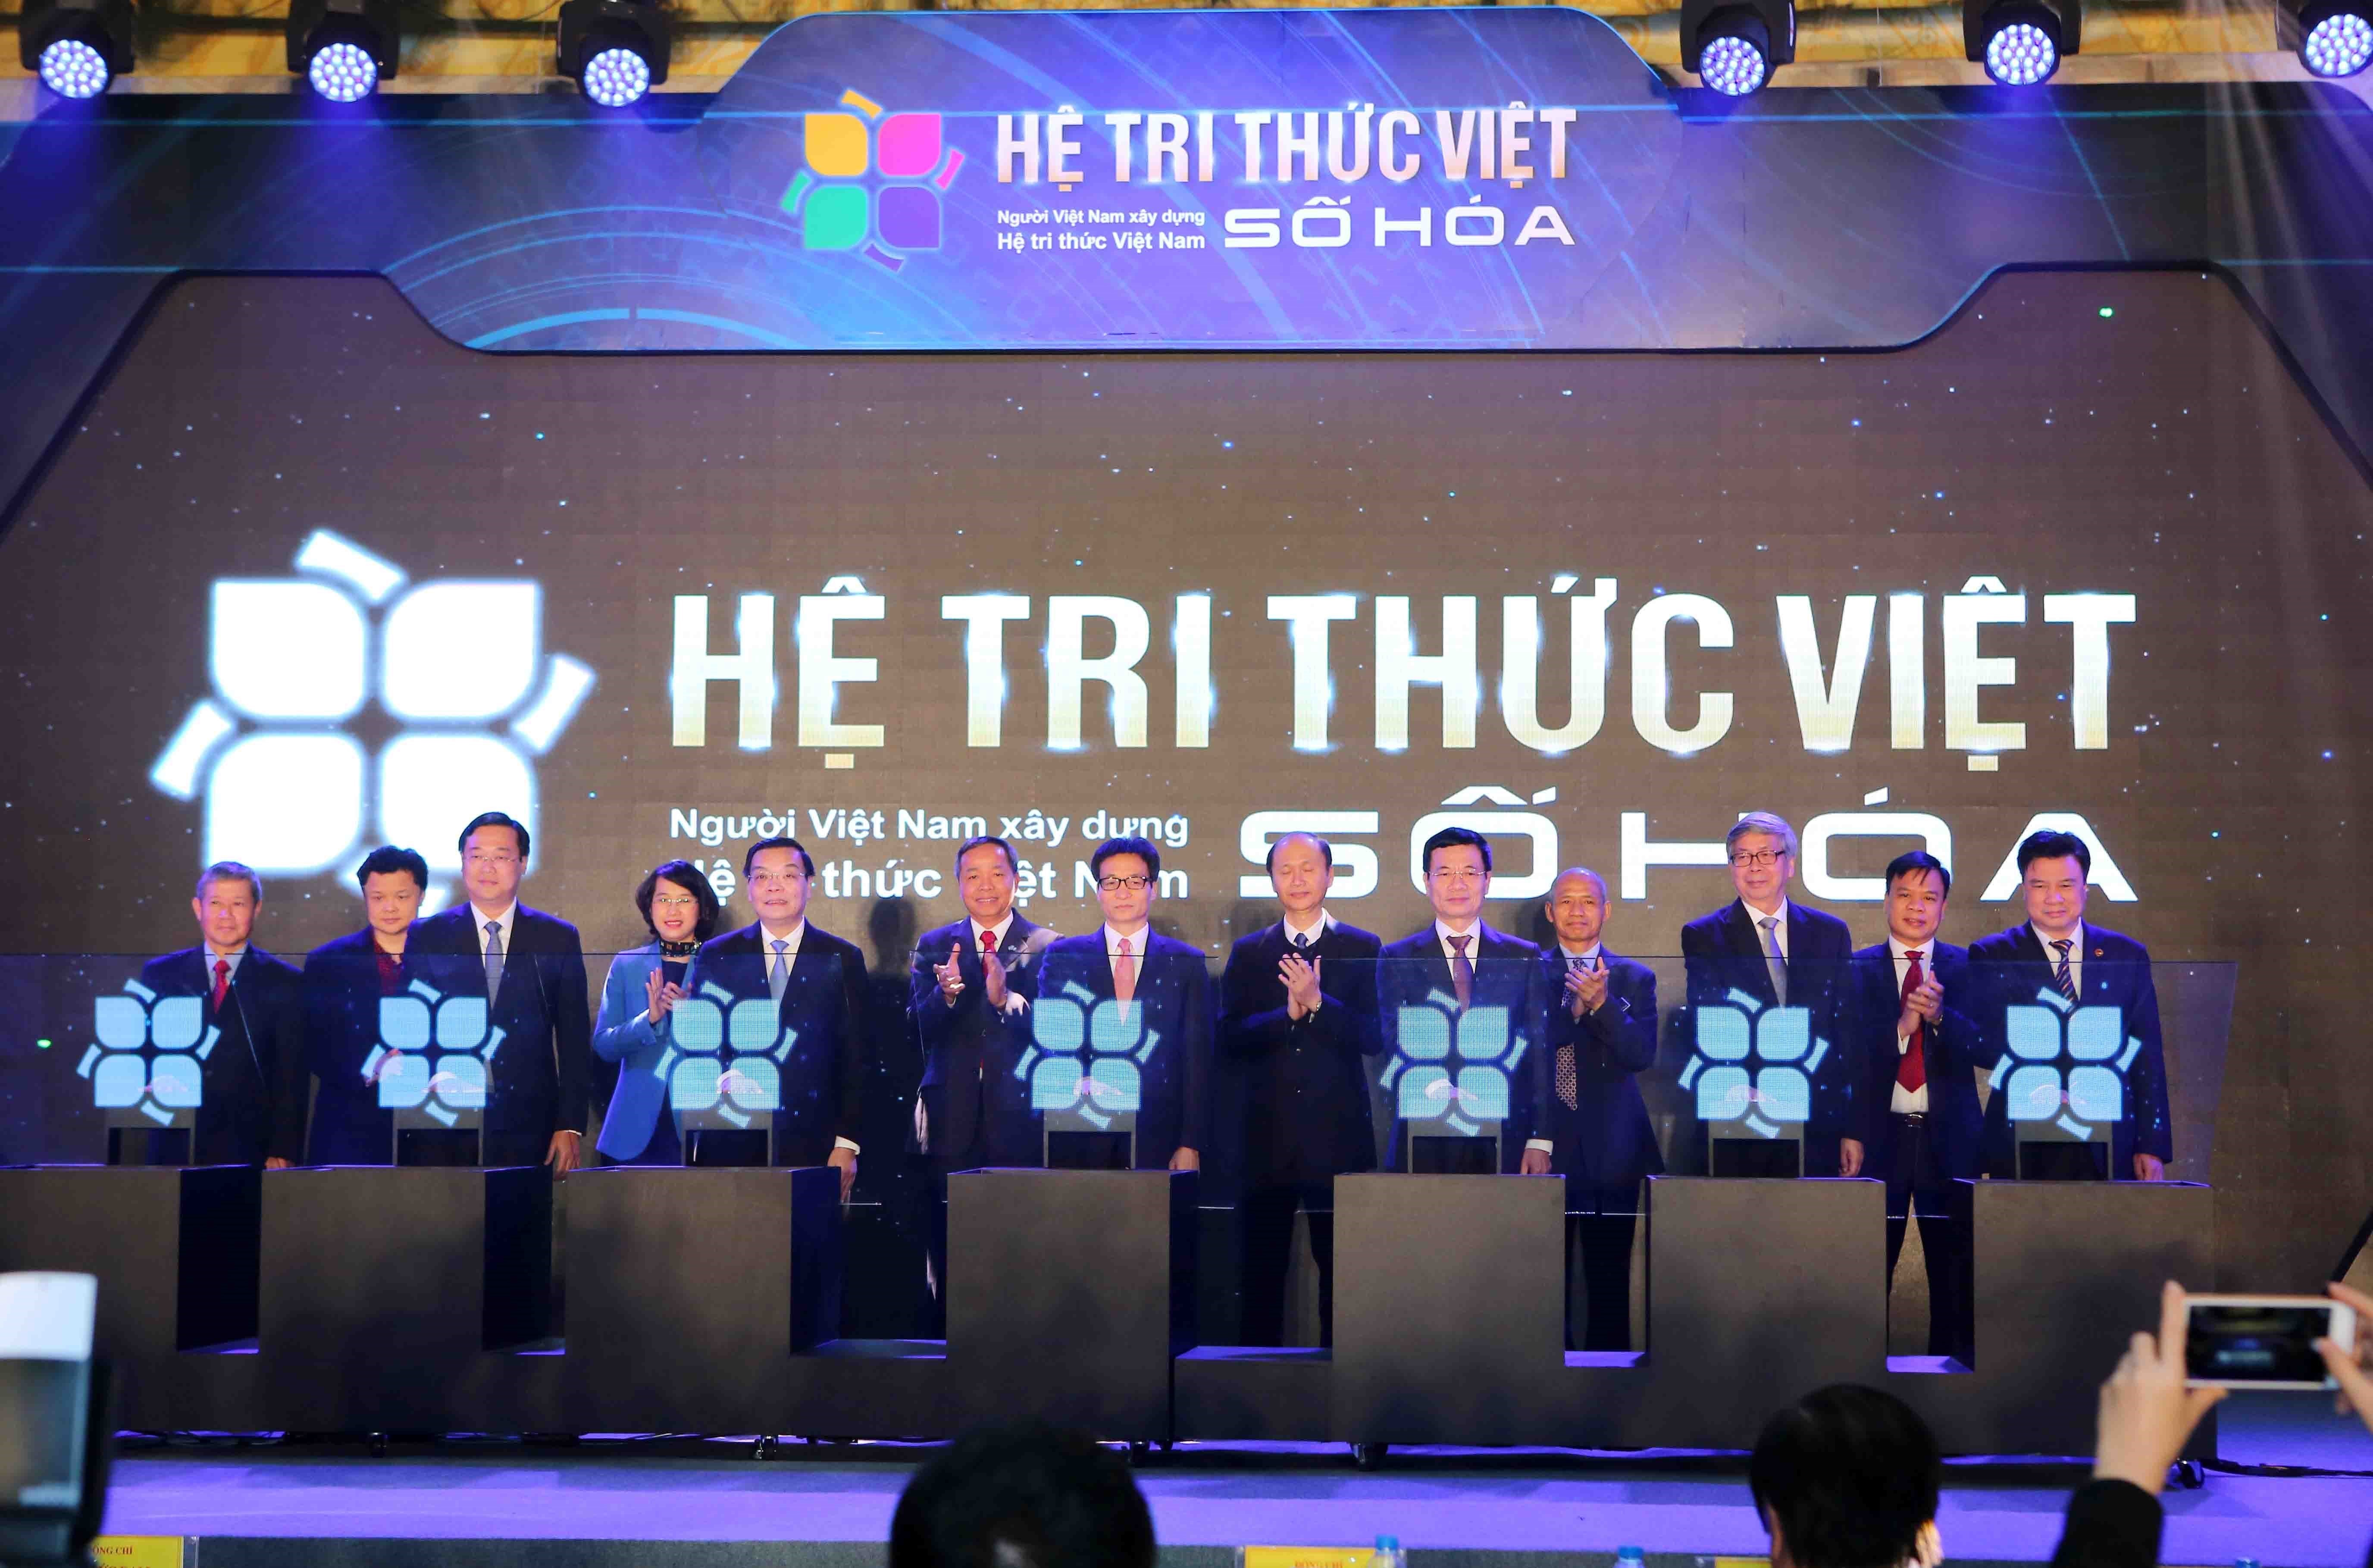 Phó thủ tướng Chính phủ Vũ Đức Đam cùng các đại biểu khởi động đề án Hệ tri thức Việt số hóa.